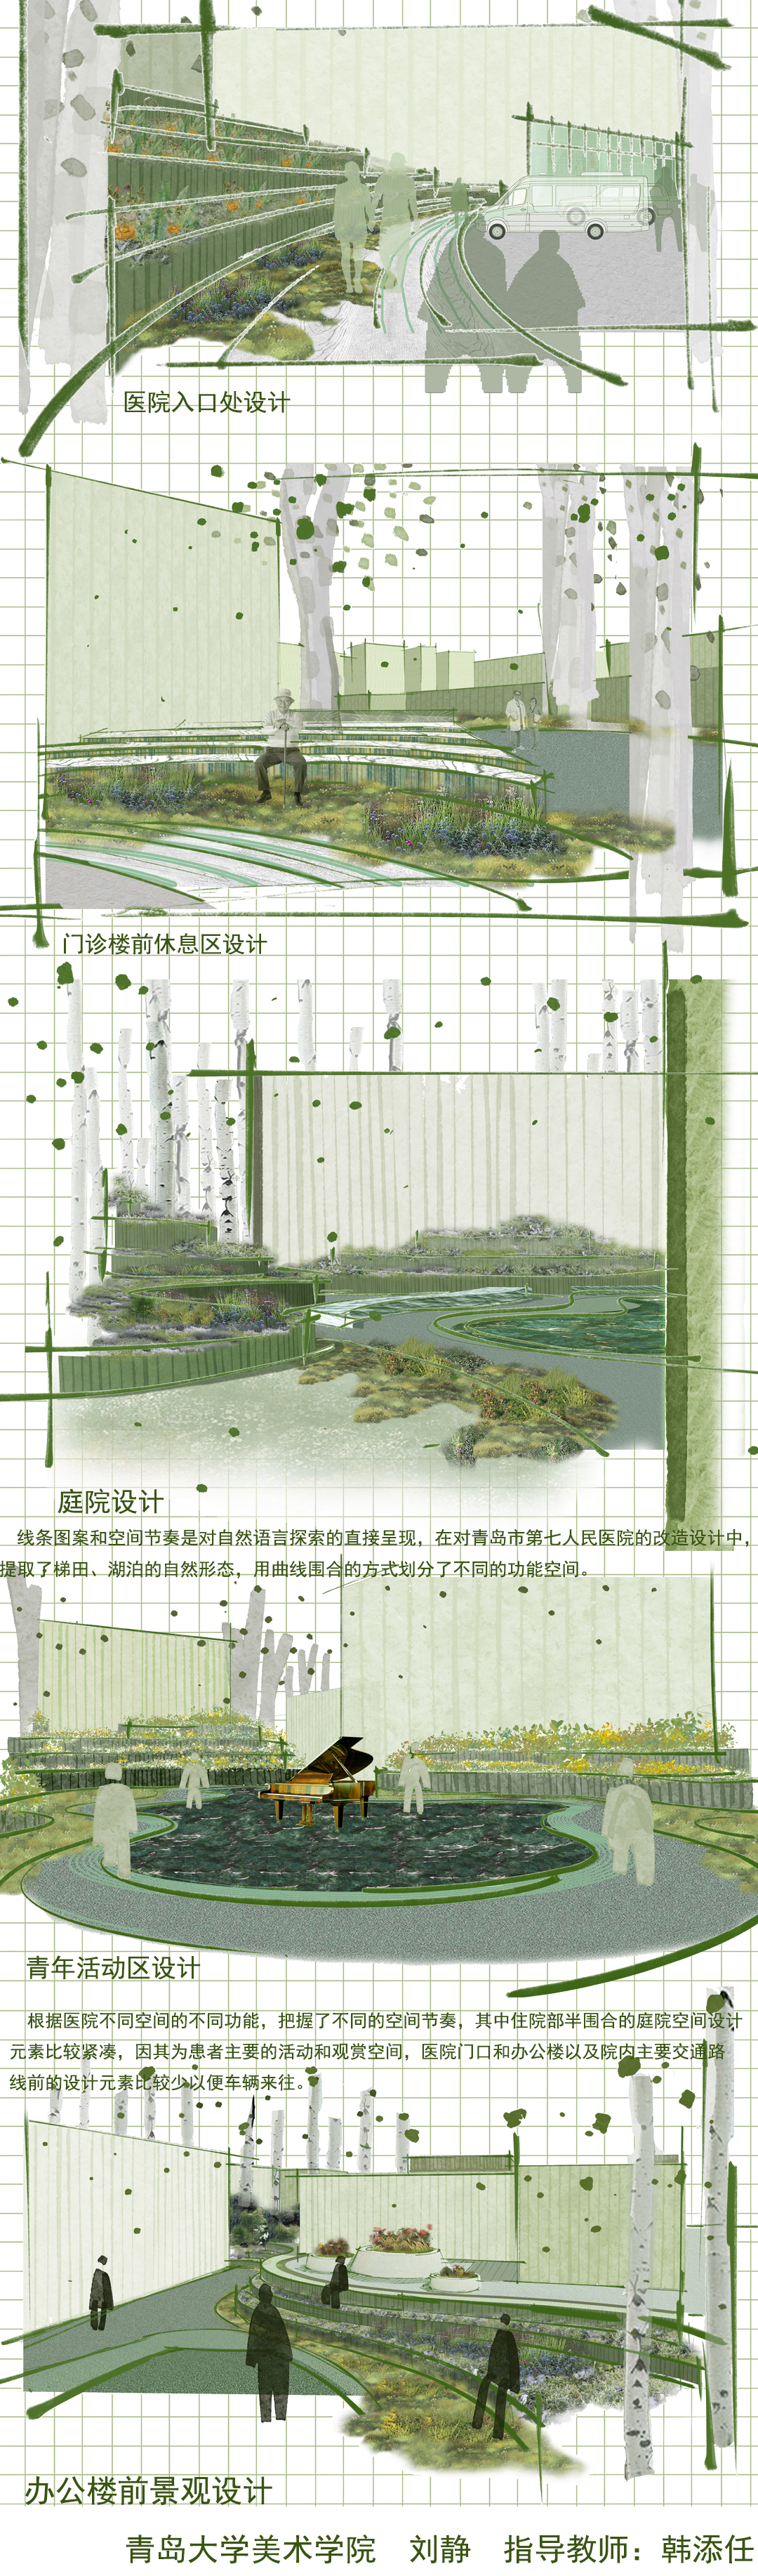 芳草萋萋鹦鹉洲——人情化景观设计在青岛市第七人民医院的应用